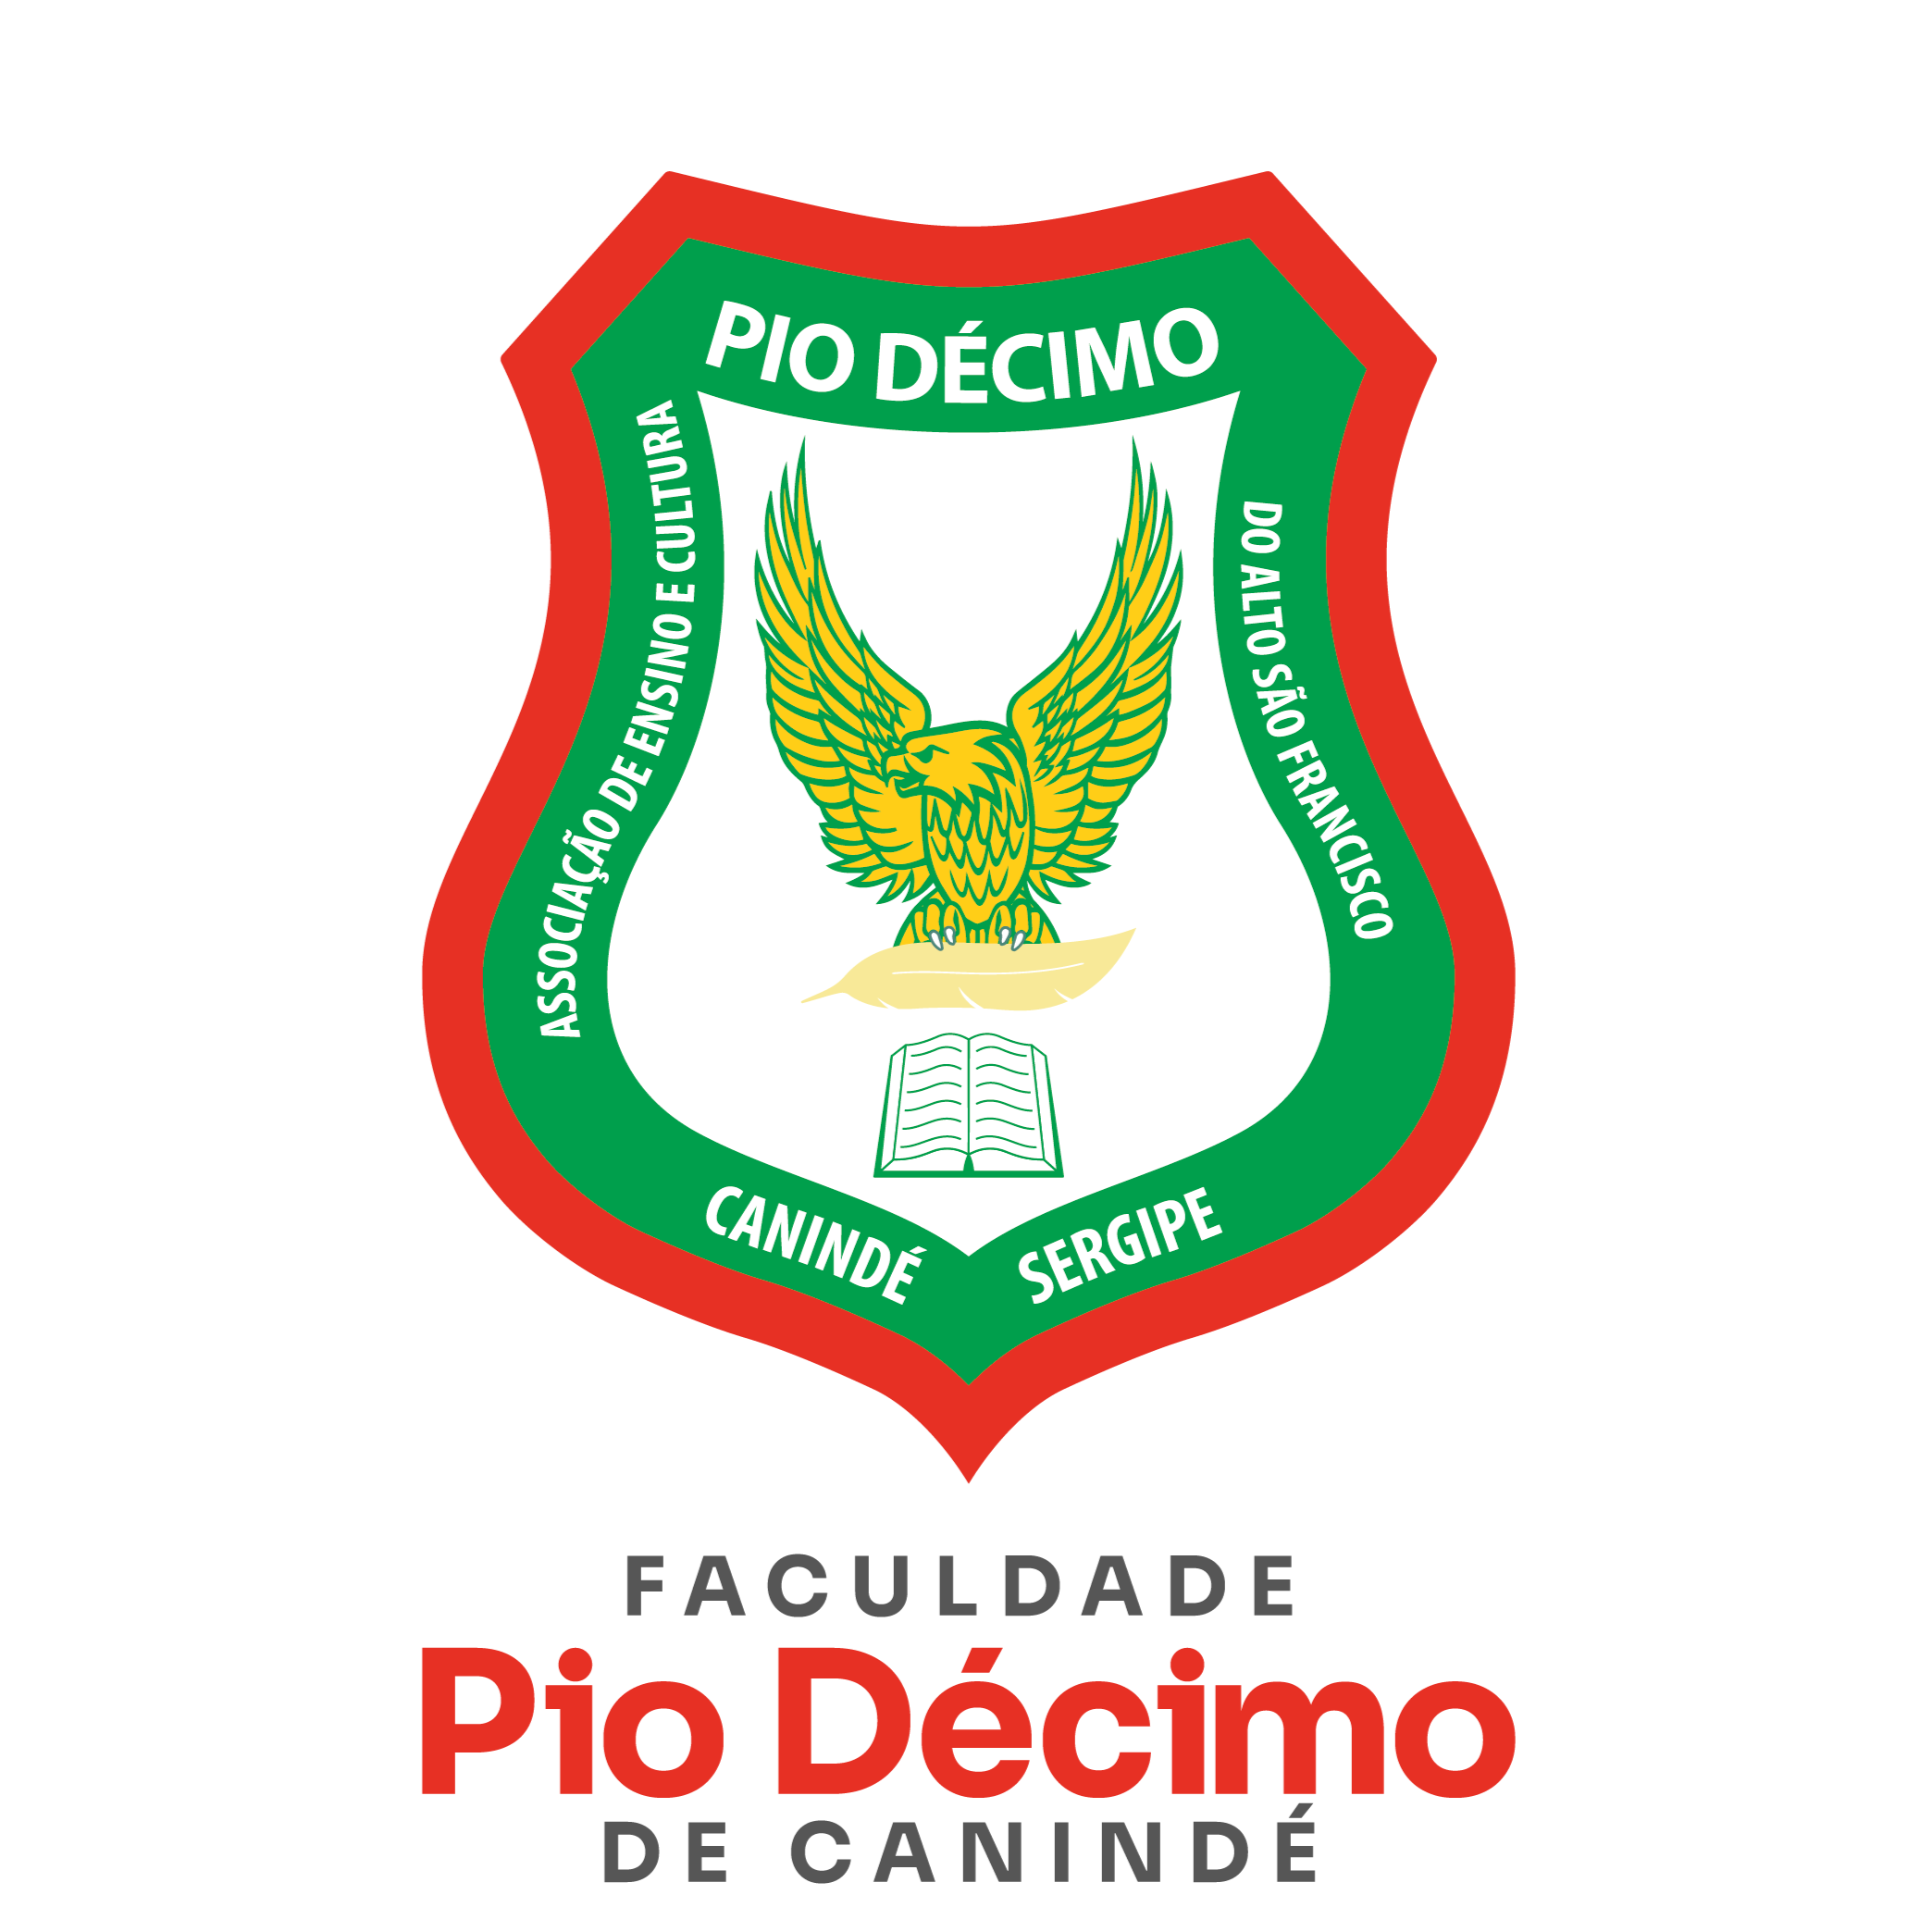 Marca da Instituição Conveniada Faculdade Pio Décimo de Canindé de São Francisco - FAPIDE